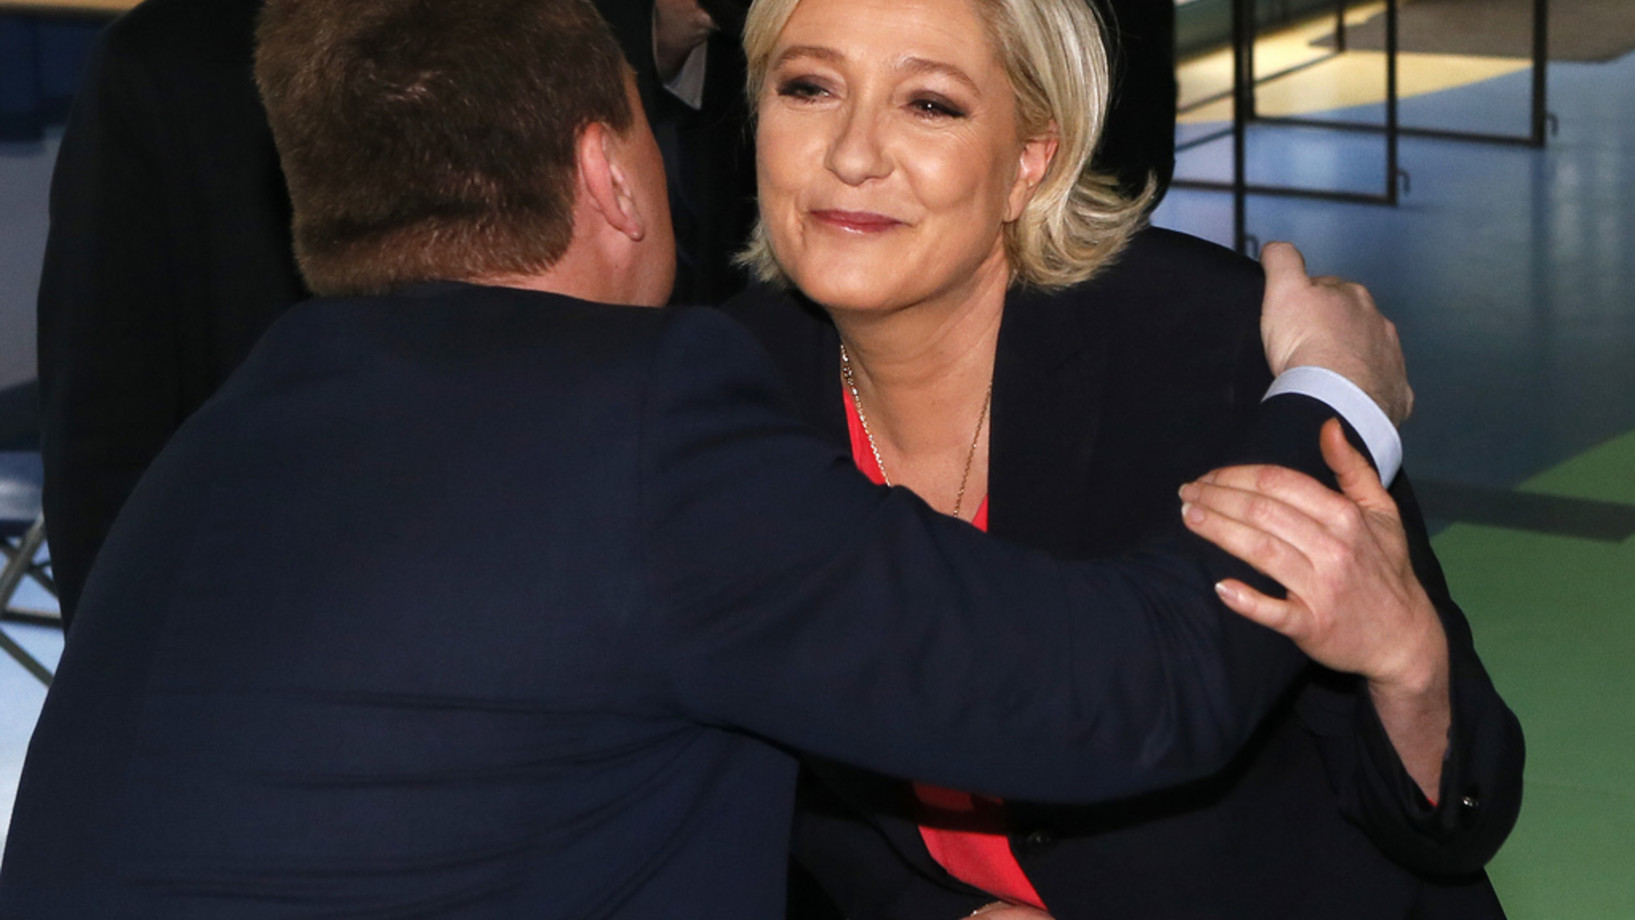 Umarmung und Küsschen vor der Stimmabgabe. Die Rechtsaussen-Kandidatin Marine Le Pen wählt am Sonntagvormittag in Hénin Beaumont in Nordfrankreich. (Foto: Keystone/AP/Michel Spingler)

